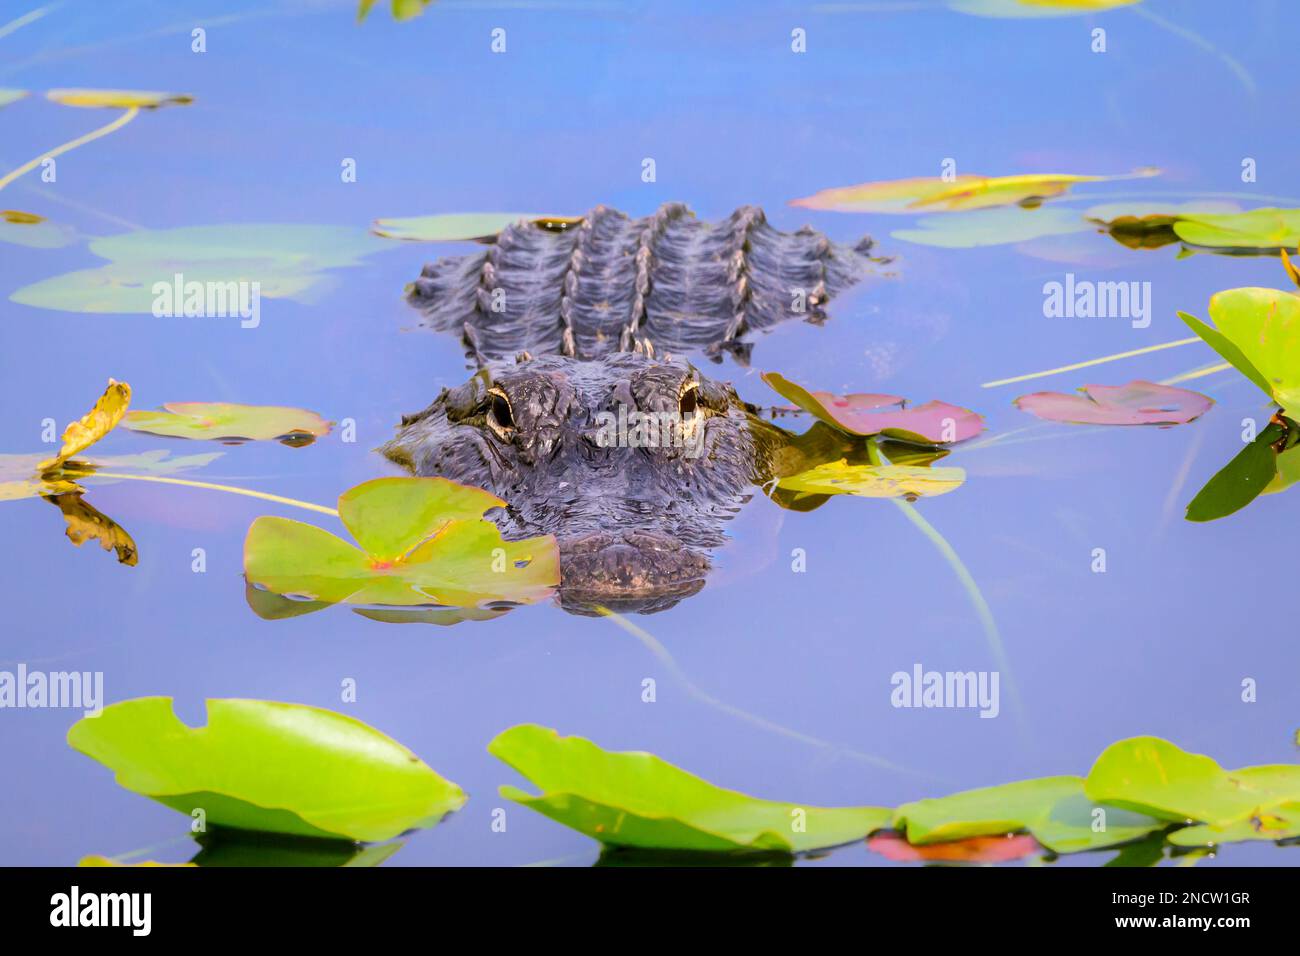 Alligator américain (Alligator mississippiensis) se cachant dans l'eau entre les plantes lilly, regardant la caméra, parc national des Everglades, Floride, United Sta Banque D'Images